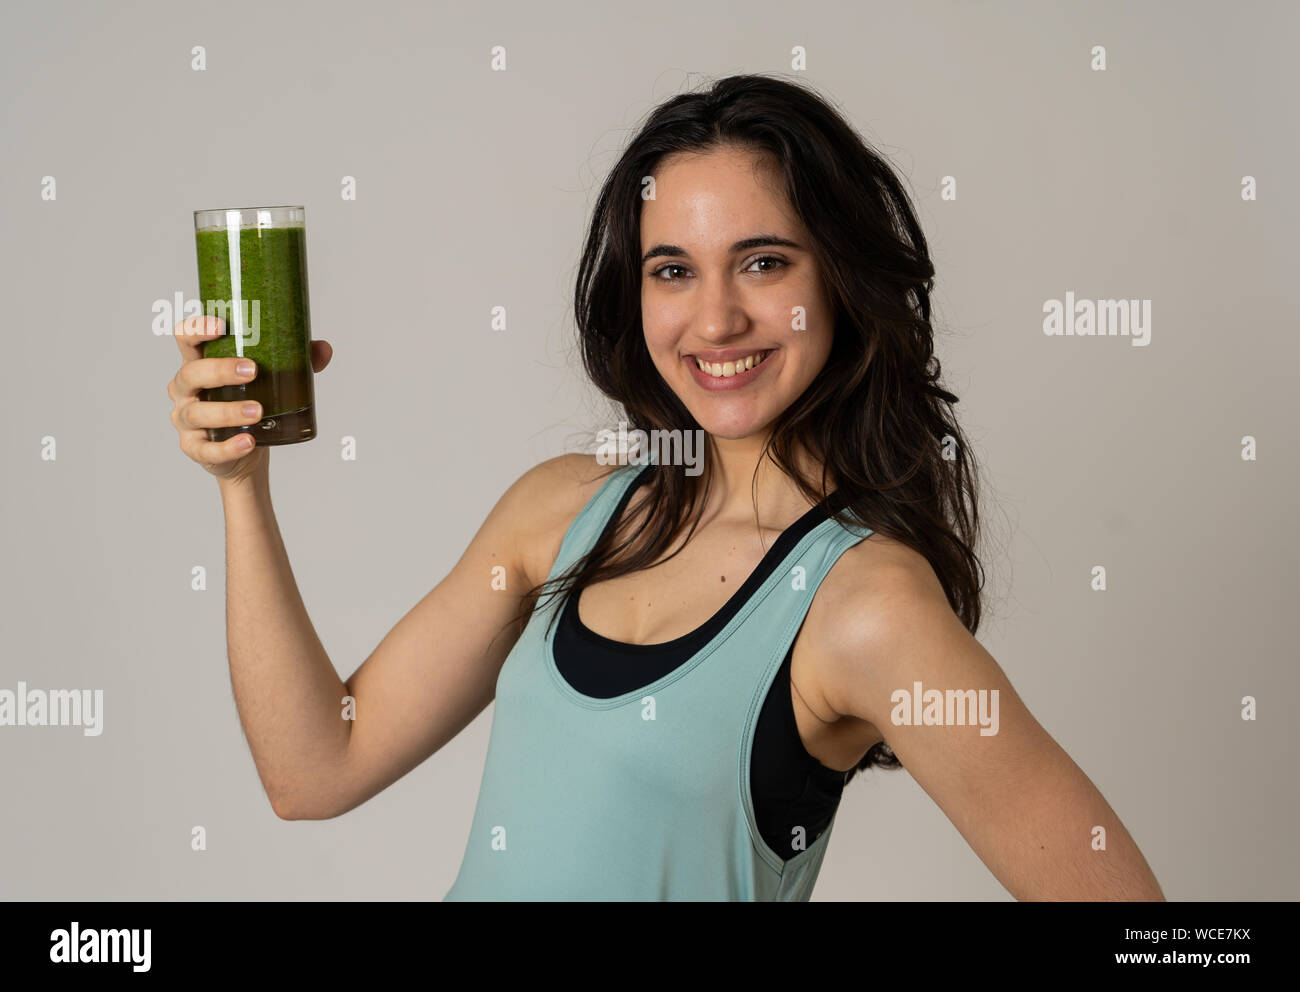 Fitness Frau glücklich lächelnde Holding Glas grünes Gemüse Smoothie nach dem Ausführen oder Training. Portrait isoliert mit kopieren. Schönheit Gesundheit Fitne Stockfoto